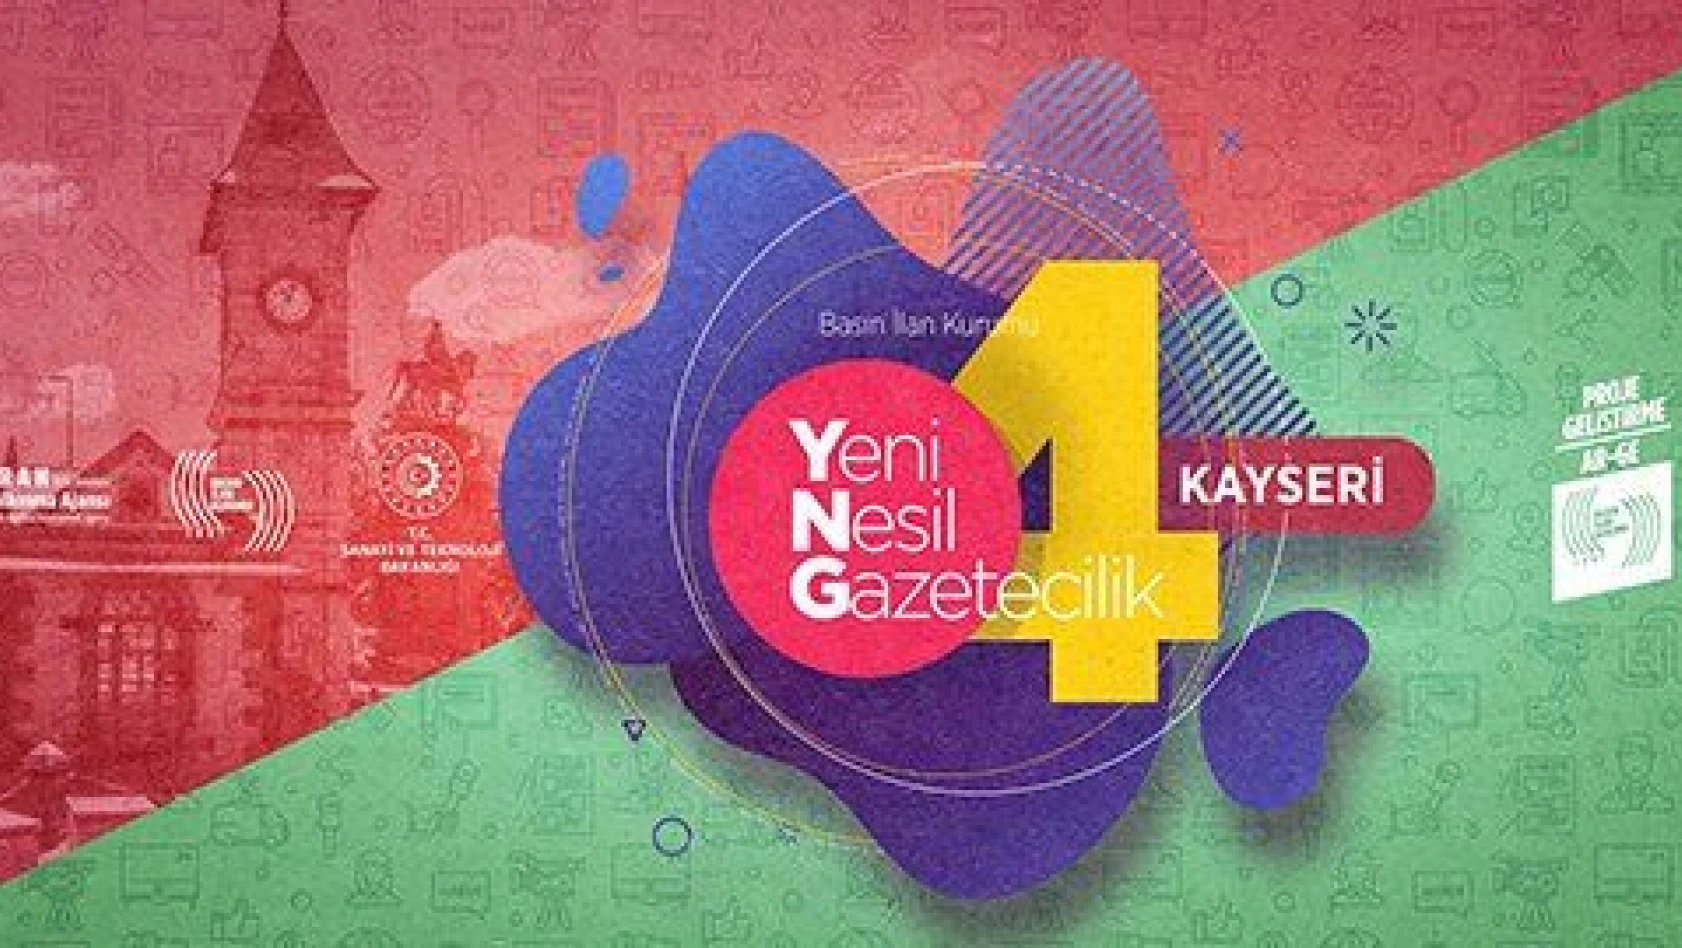 Yeni Nesil Gazetecilik eğitim ve istihdam programı Kayseri'de 